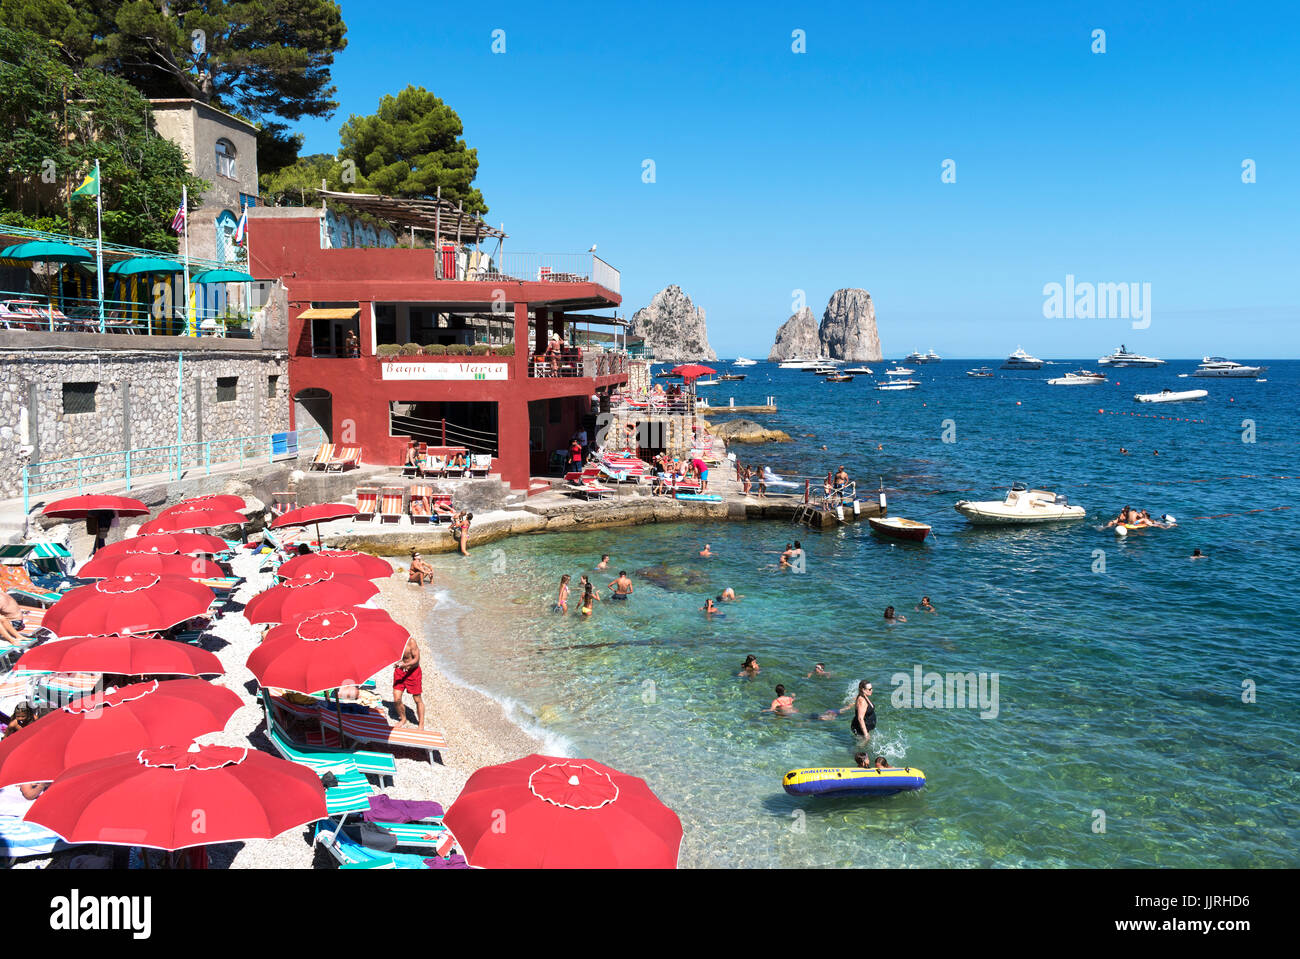 Les gens sur la plage et dans la mer à Marina Piccola, sur l'île de Capri, italie Banque D'Images